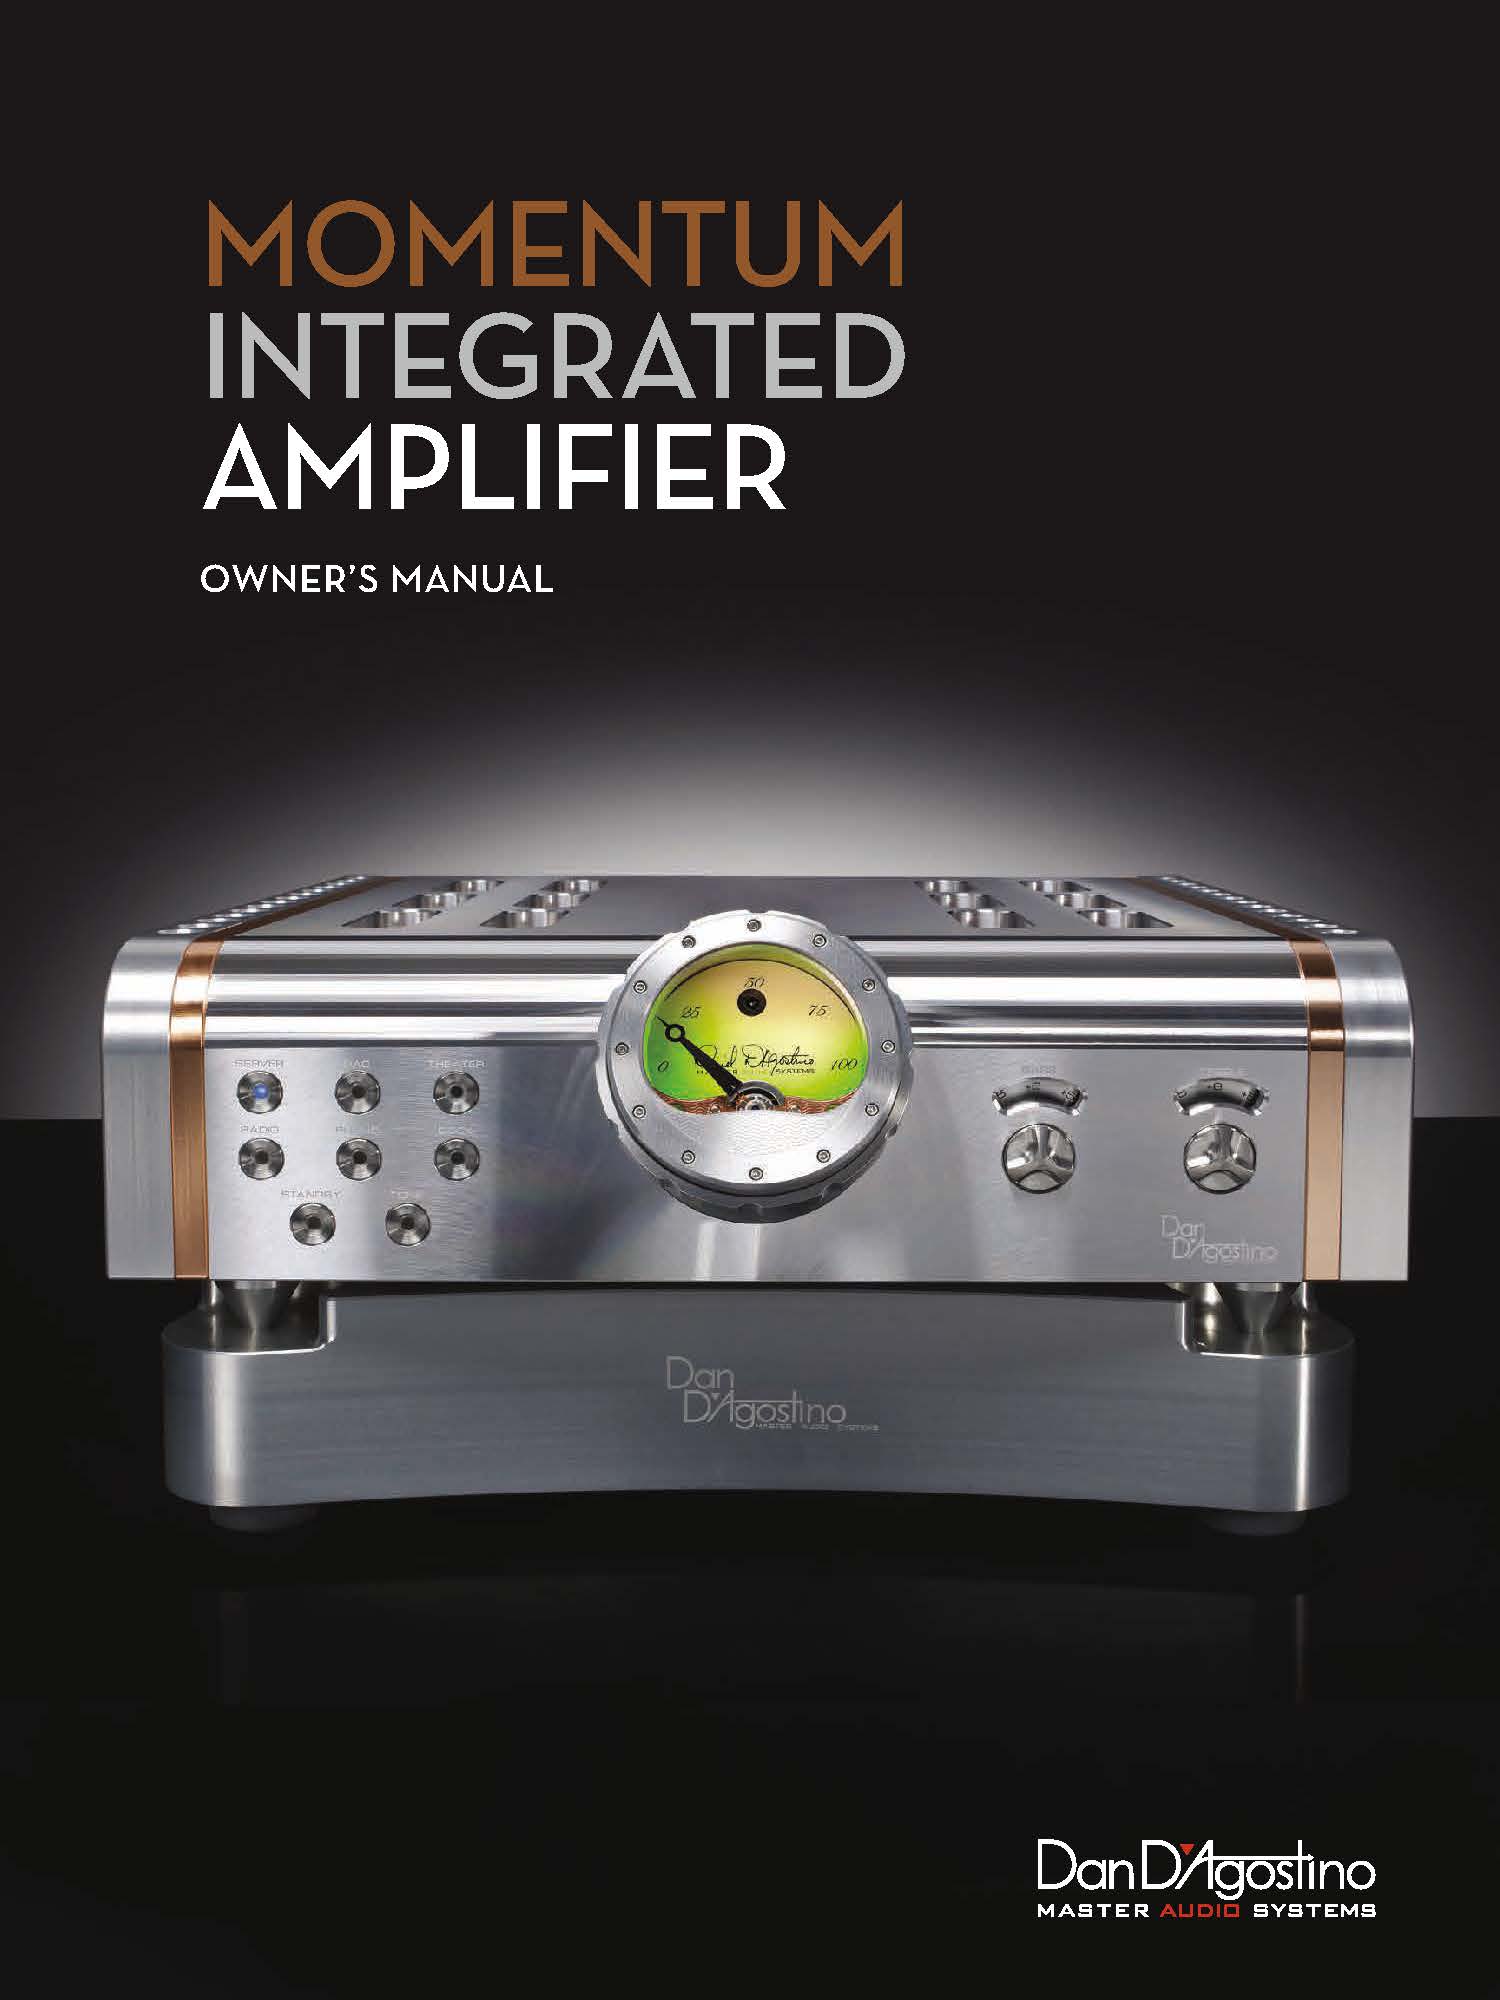 Dan D'Agostino Momentum Integrated Amplifier Owner Manual - Norman Audio